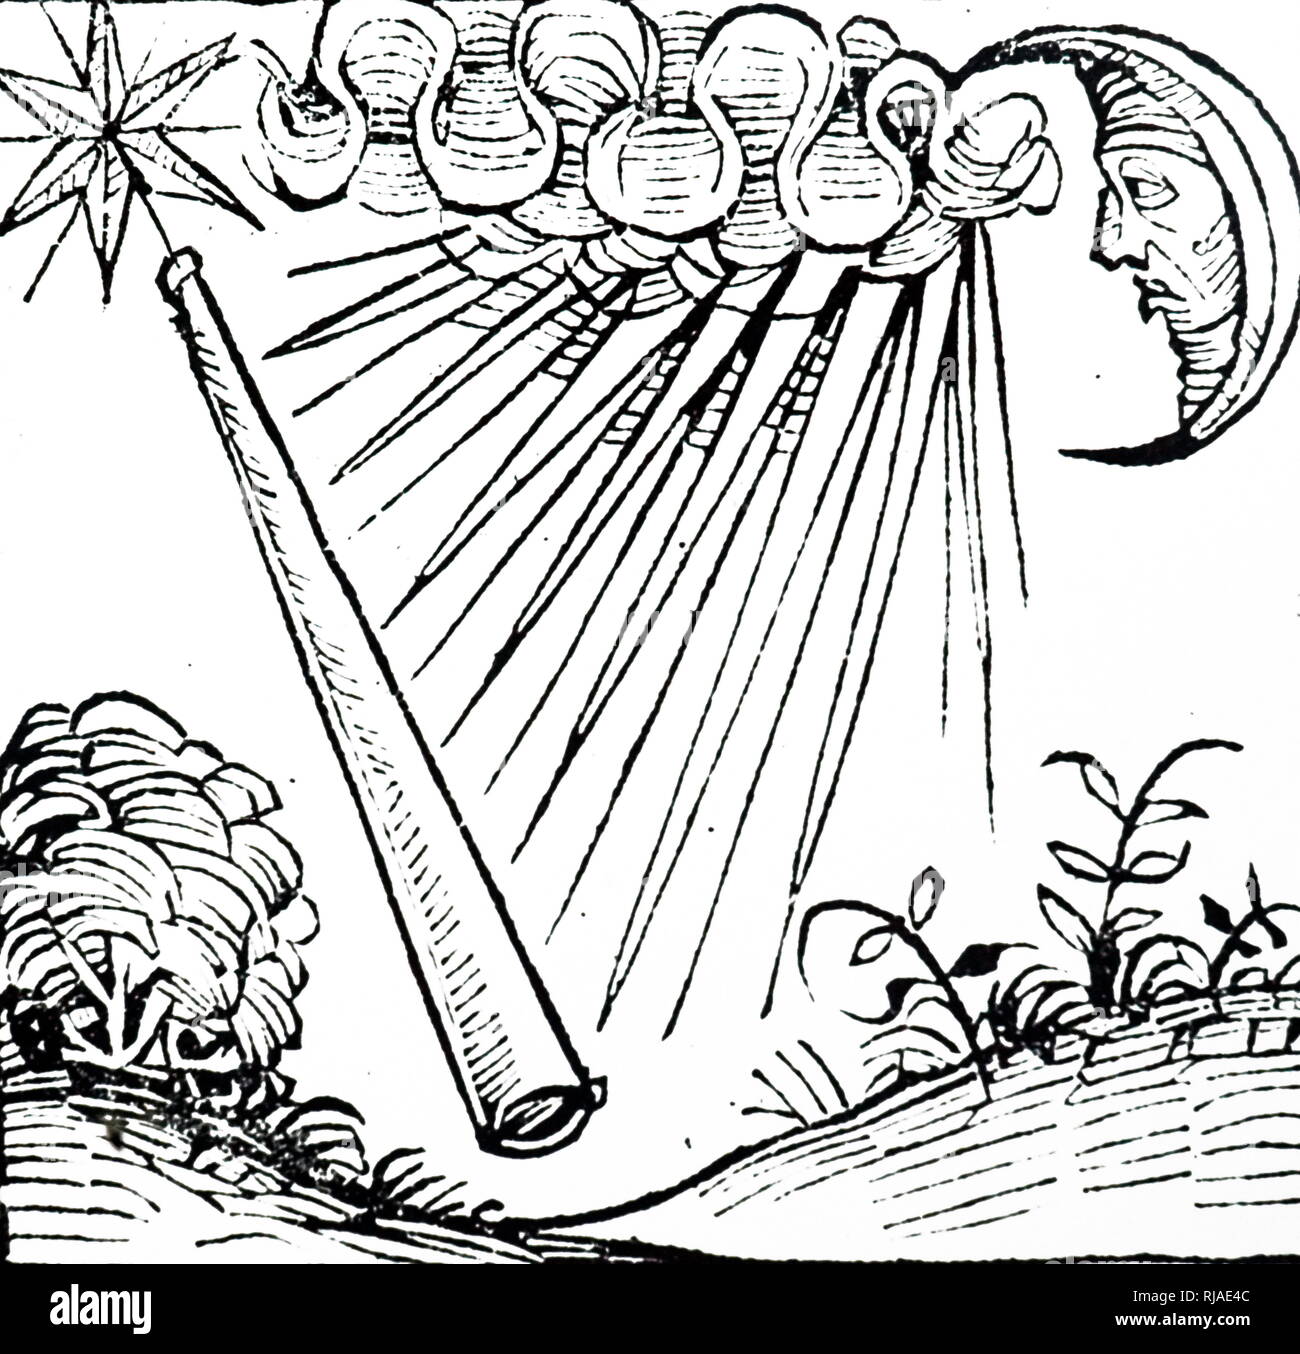 Abbildung: ein heftiger Sturm und Blitz als thunderbolt blinkt. In den Nürnberger Chronik dargestellt. 1493. Stockfoto